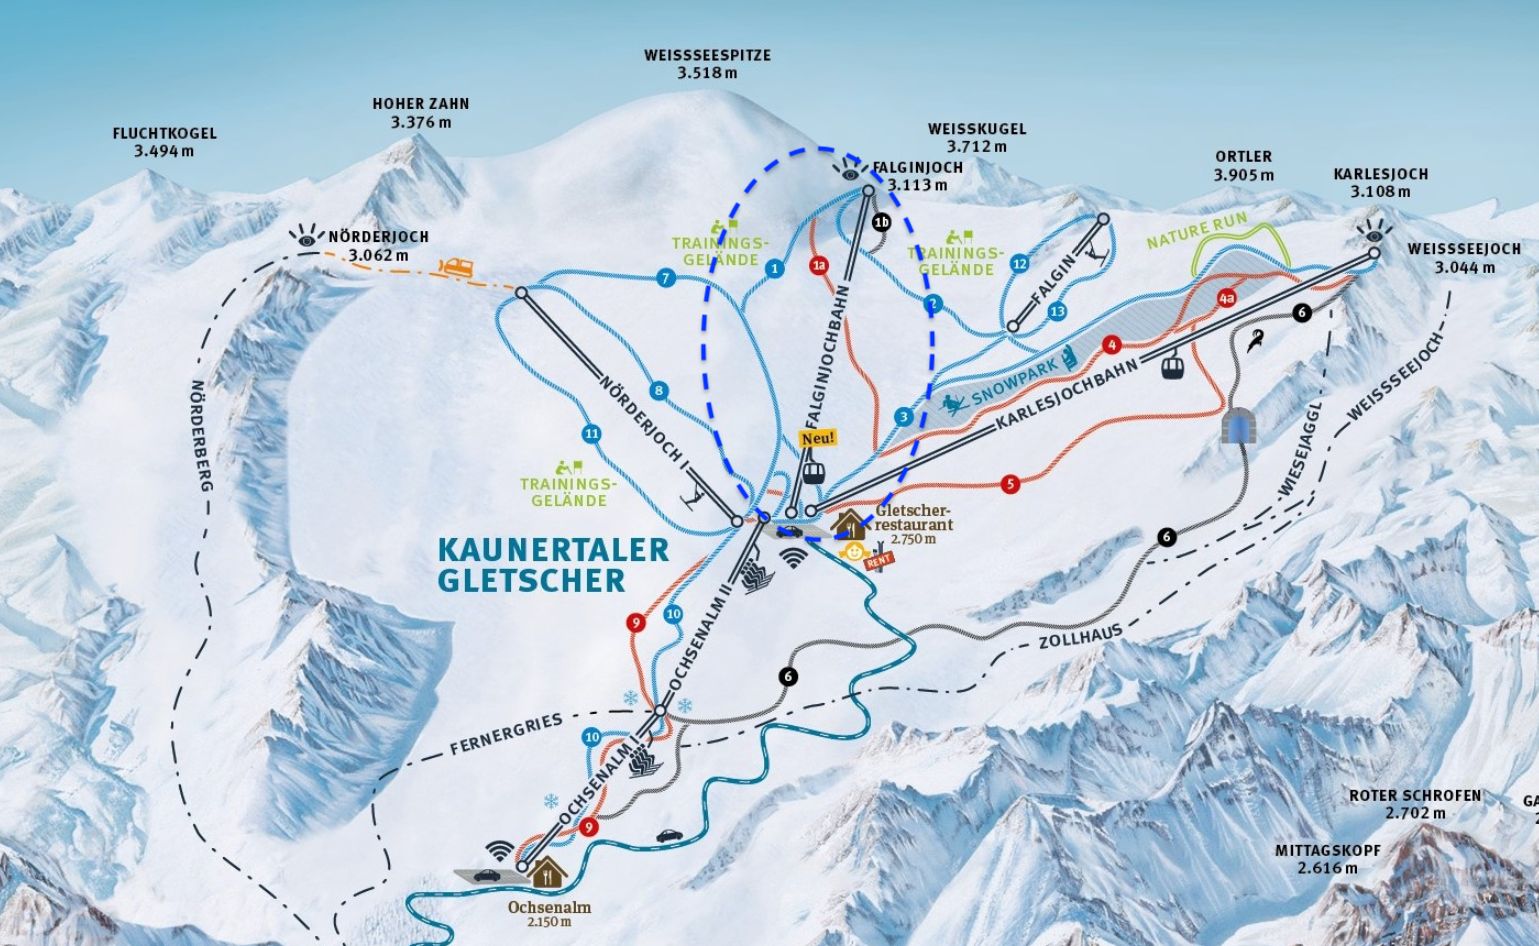 De nieuwe pistekaart van de Kaunertaler Gletscher met de nieuwe Falginjochbahn ingetekend